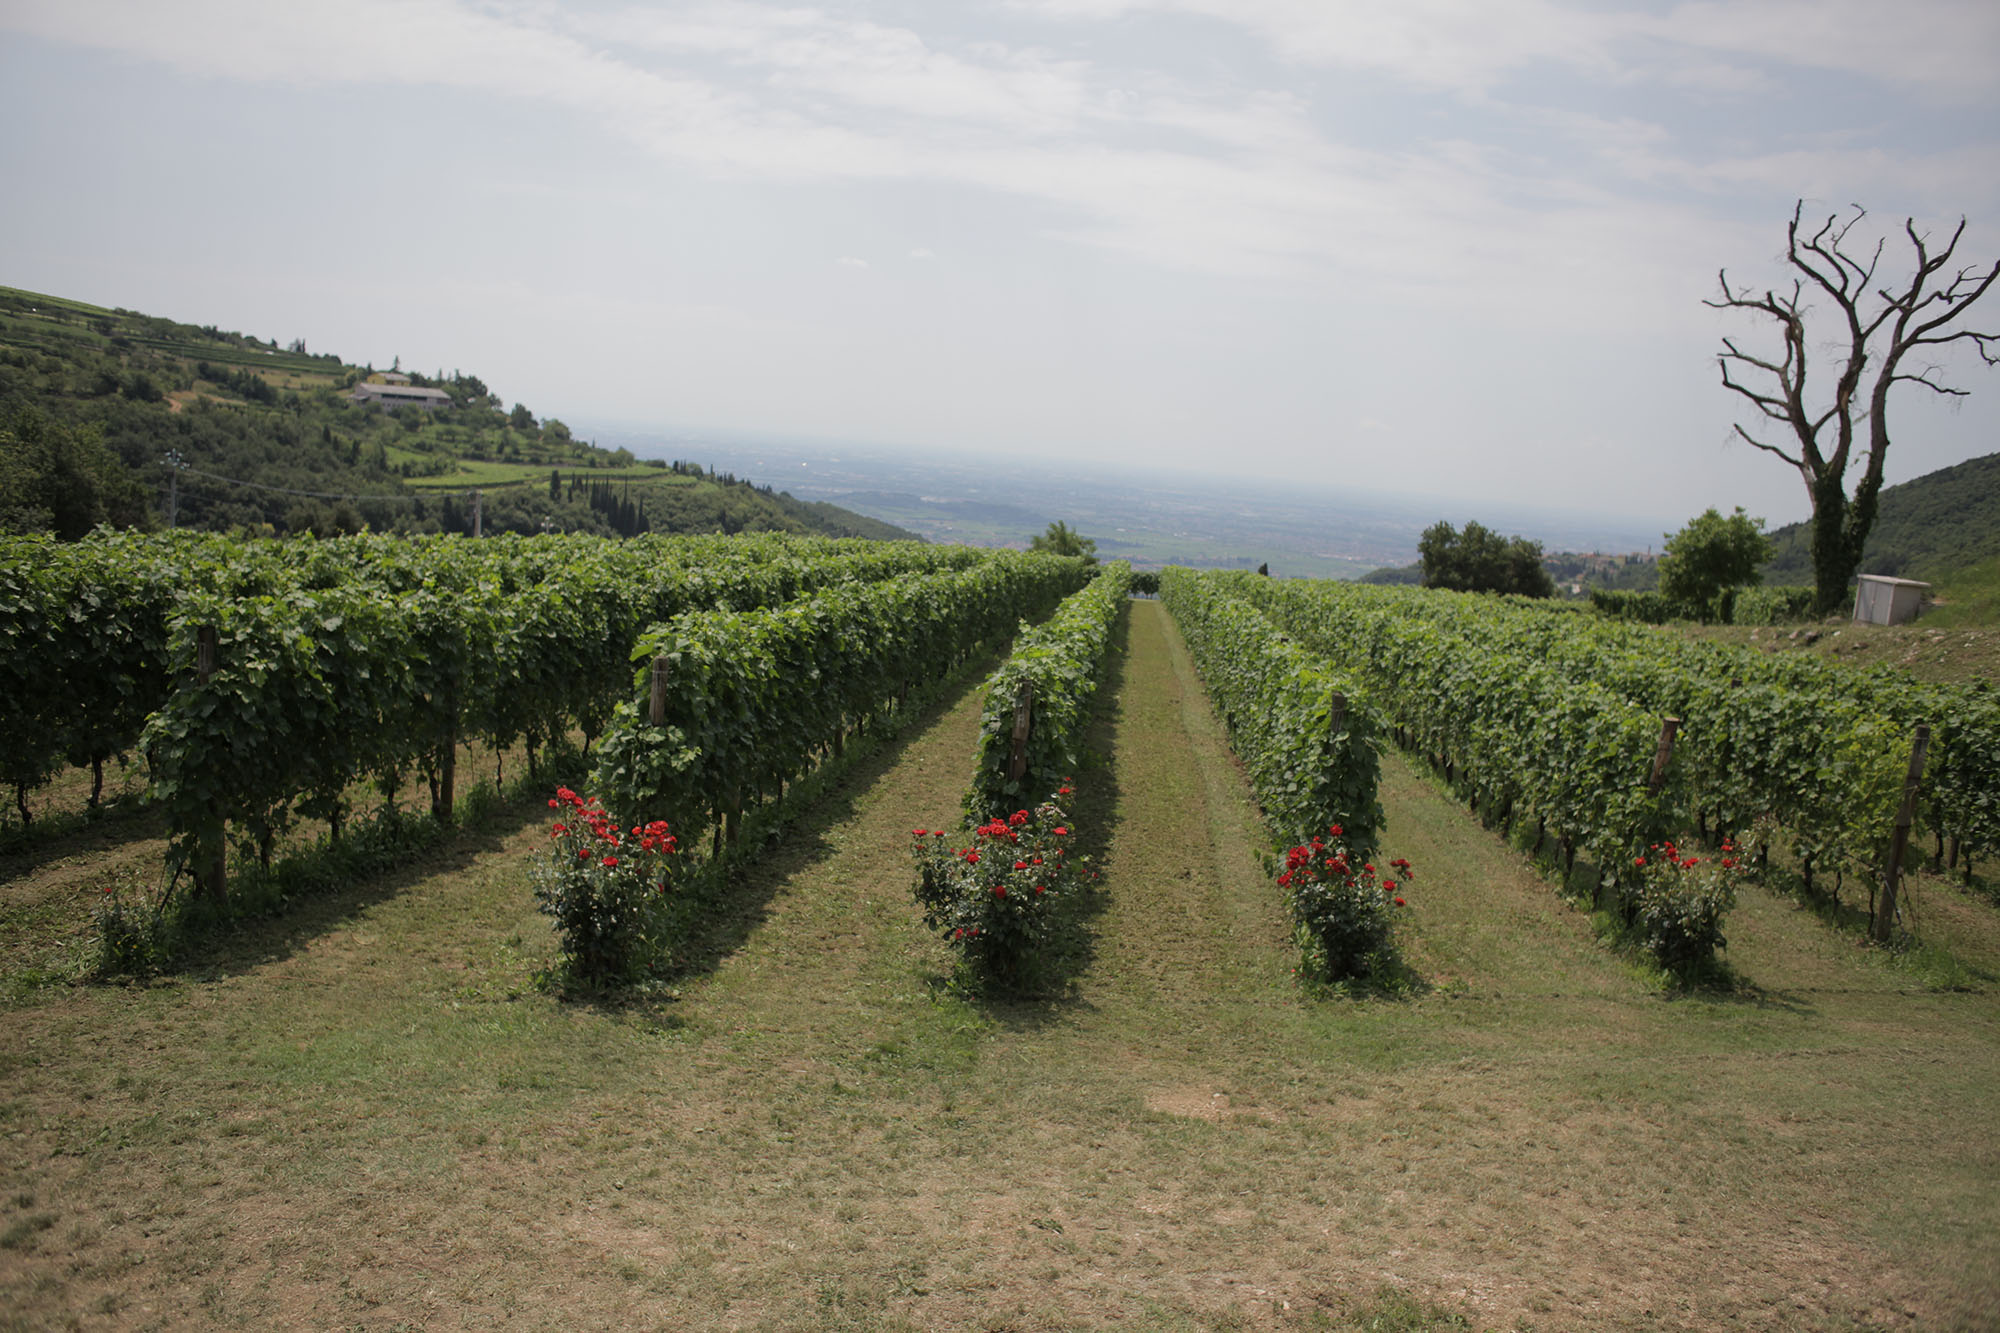 LE MALATTIE DELLA VITE: Peronospora e Oidio sono i principali pericoli per il viticoltore